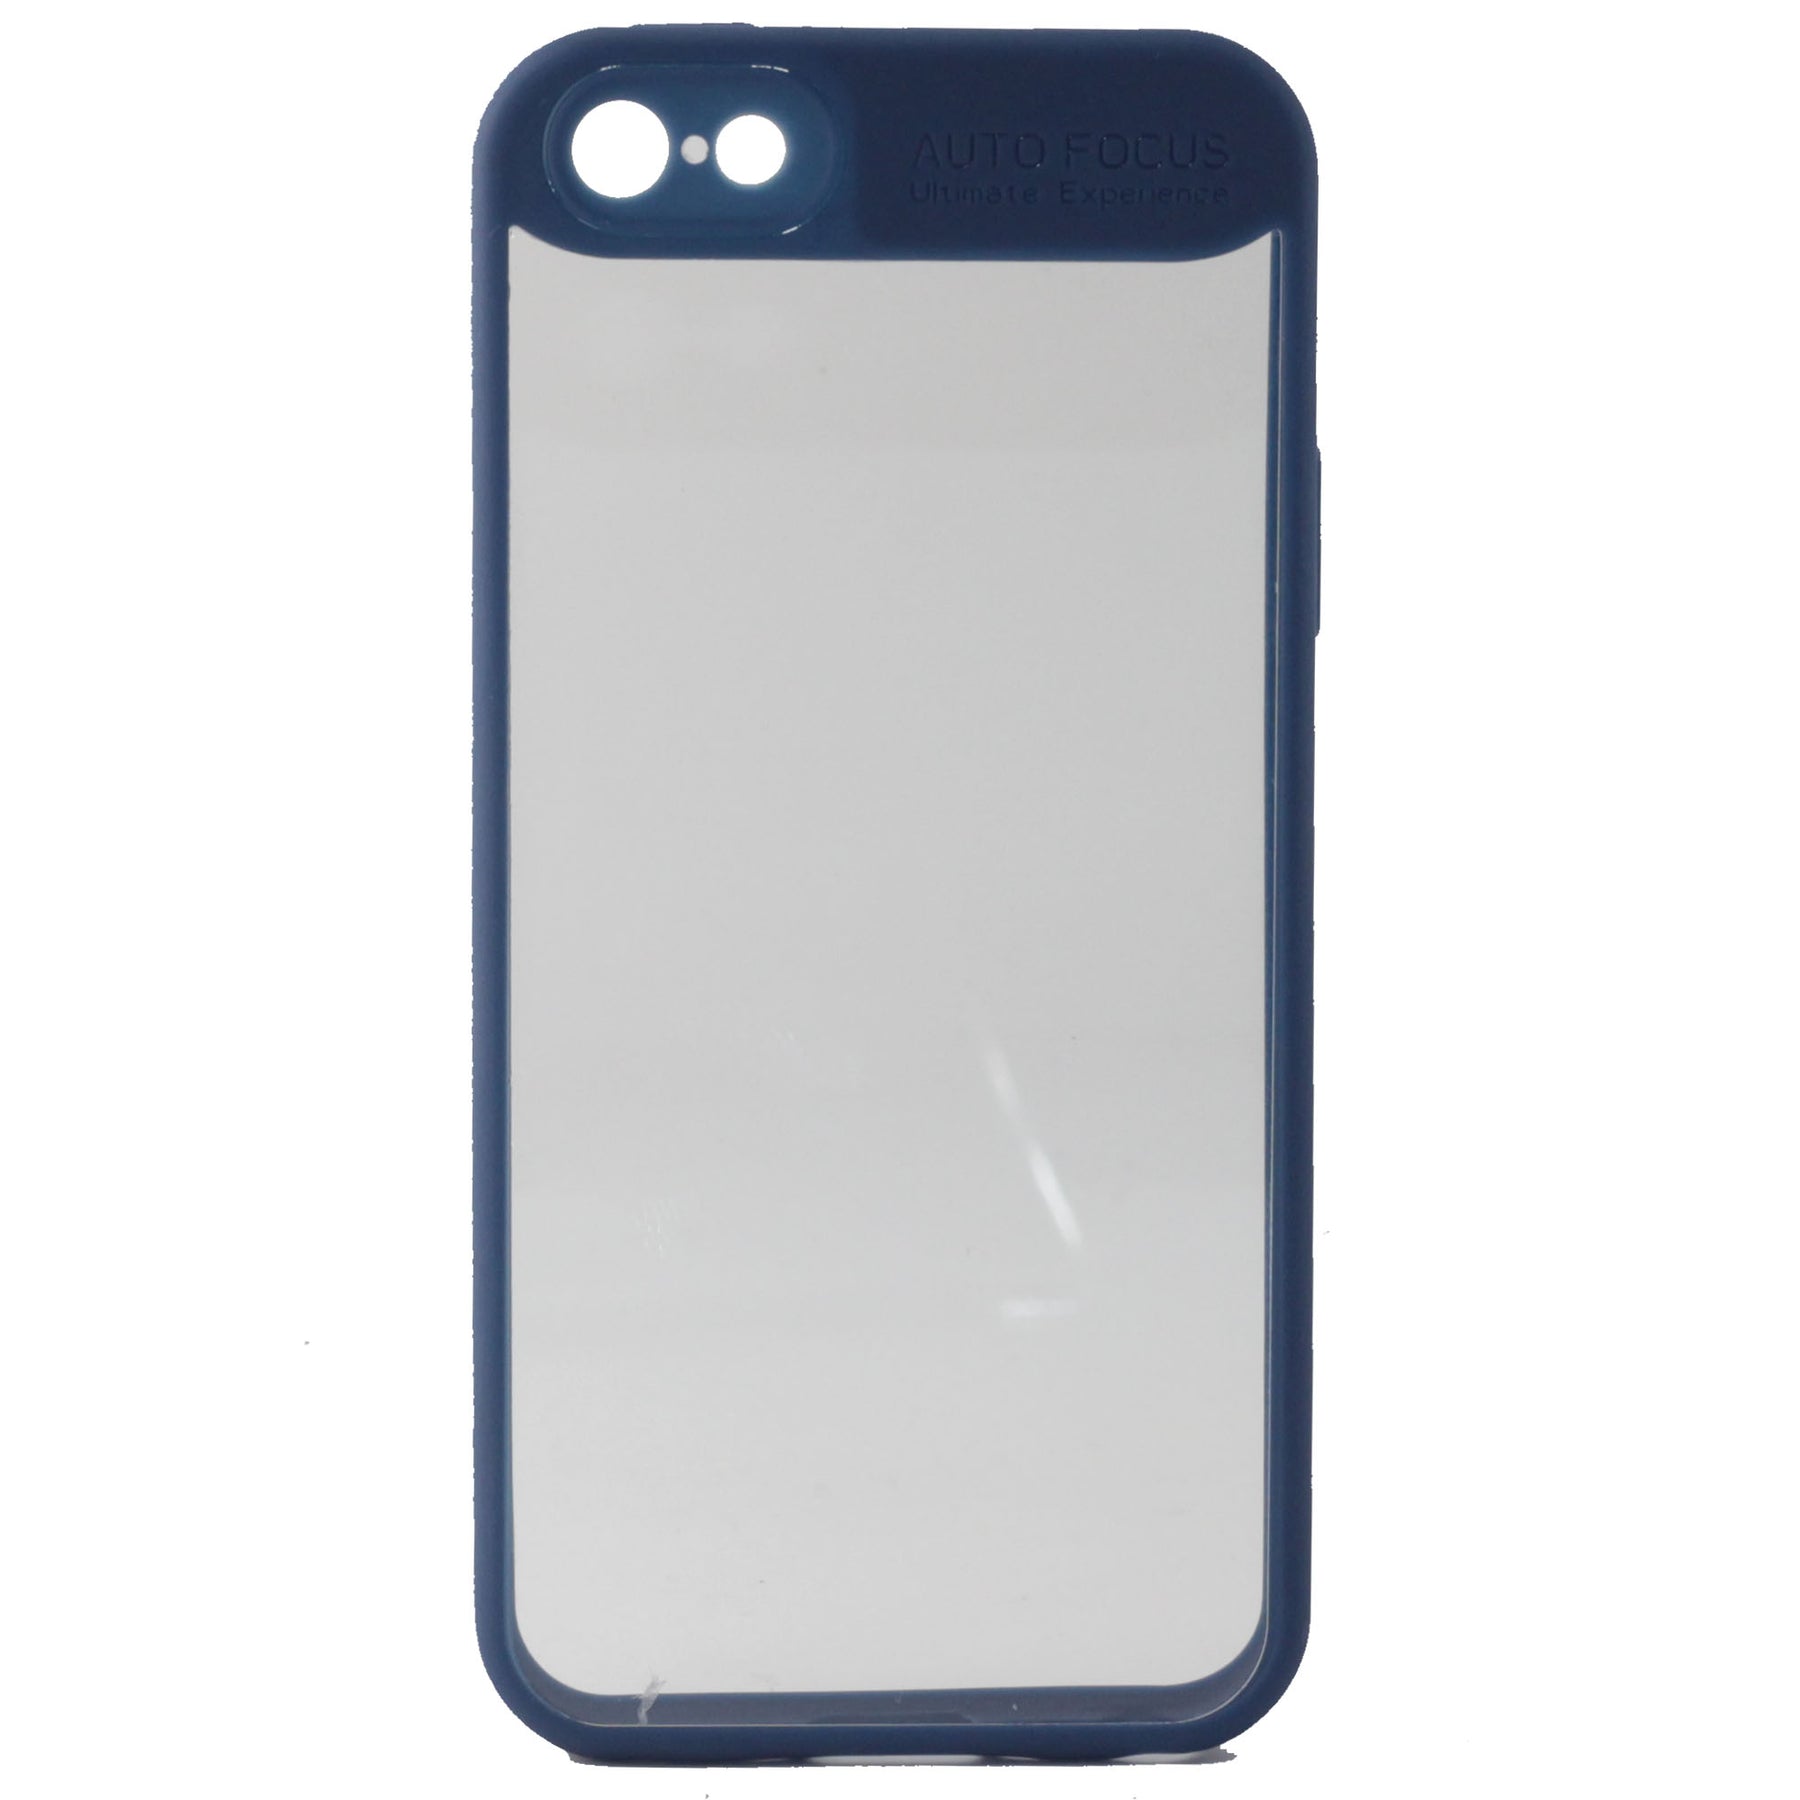 Auto Focus iPhone 5 5s SE phone case blue